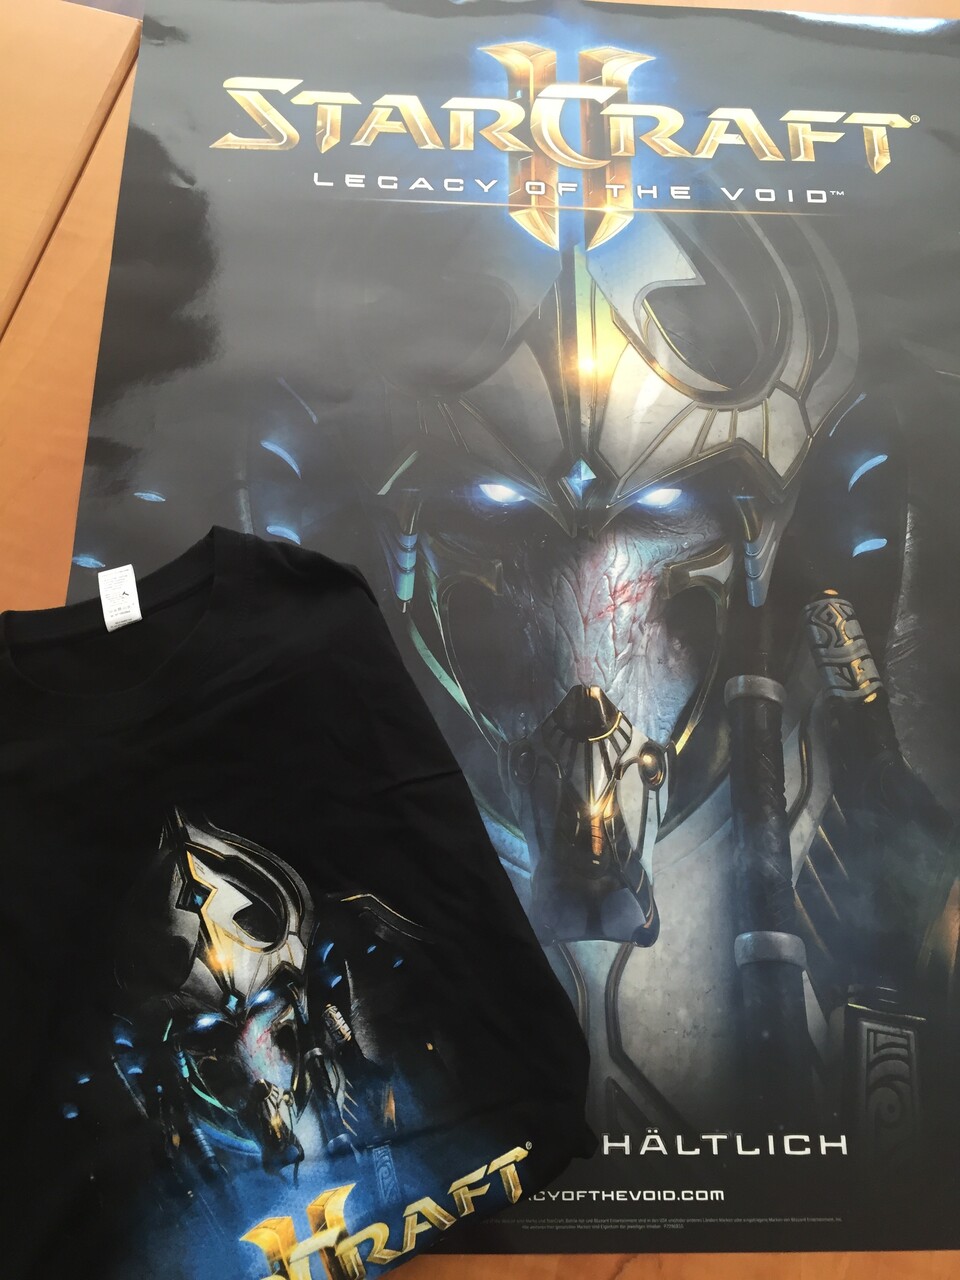 Unsere Lieblingsfrage belohnen wir mit einem Poster und einem T-Shirt von Starcraft 2: Legacy of the Void.